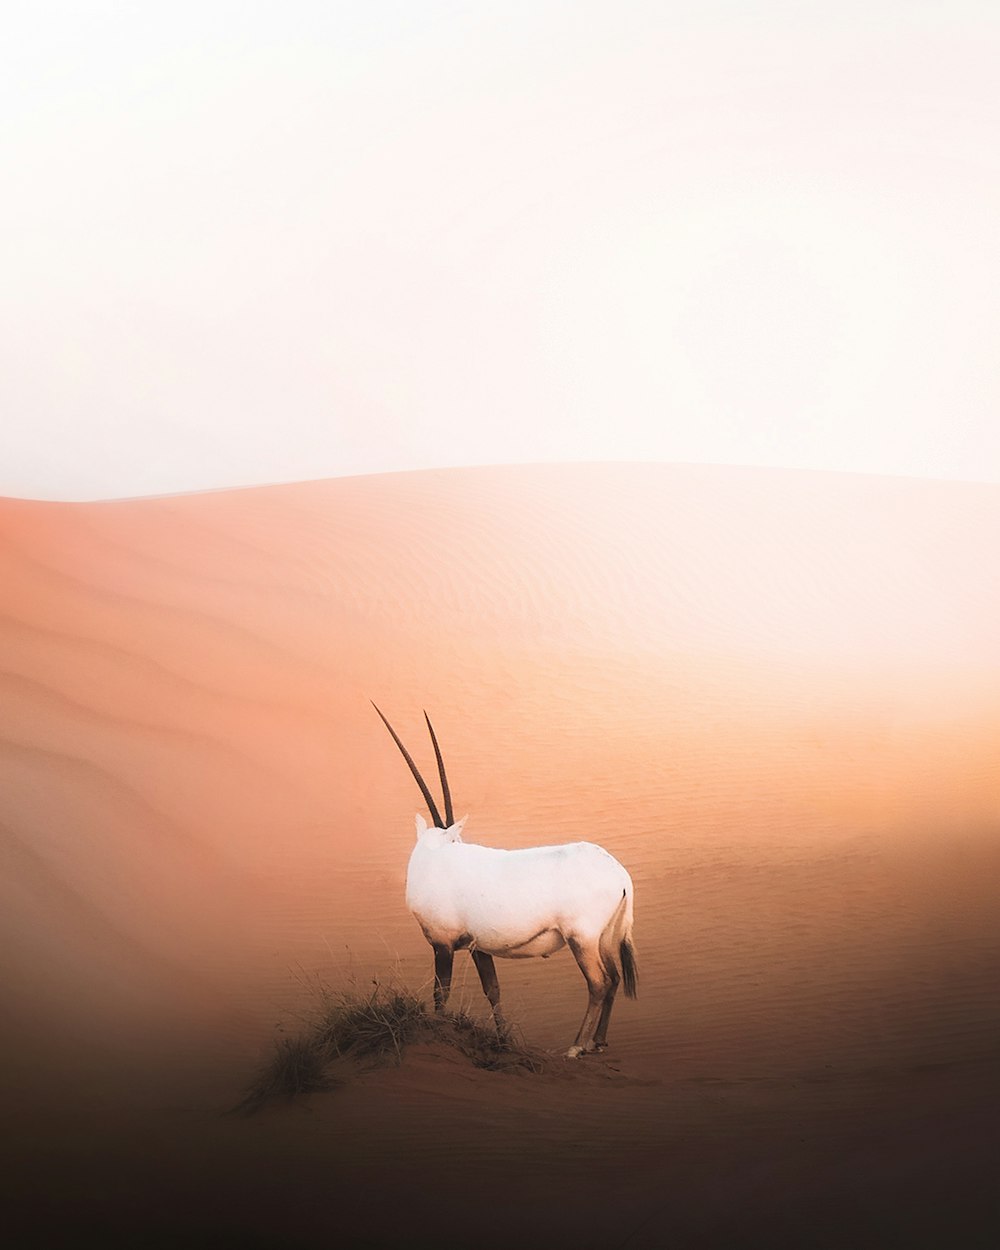 animale bianco sul deserto durante il giorno